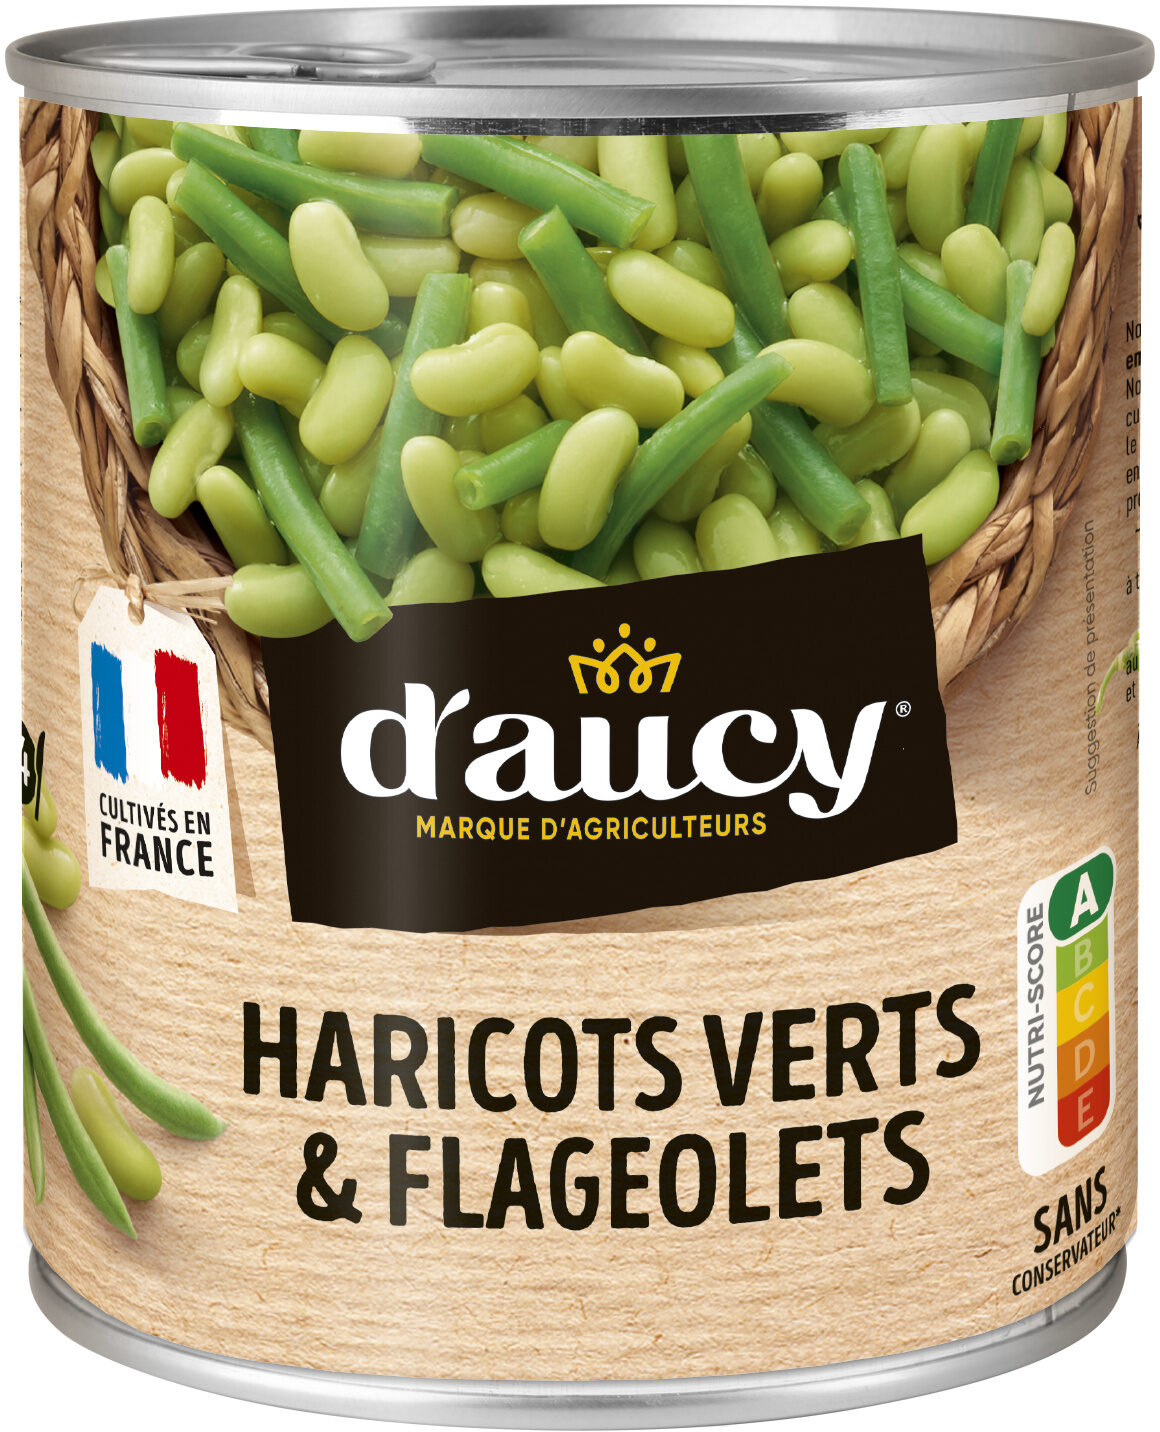 490g DUO DE HARICOTS VERTS ET FLAGEOLETS D AUCY - Prodotto - fr